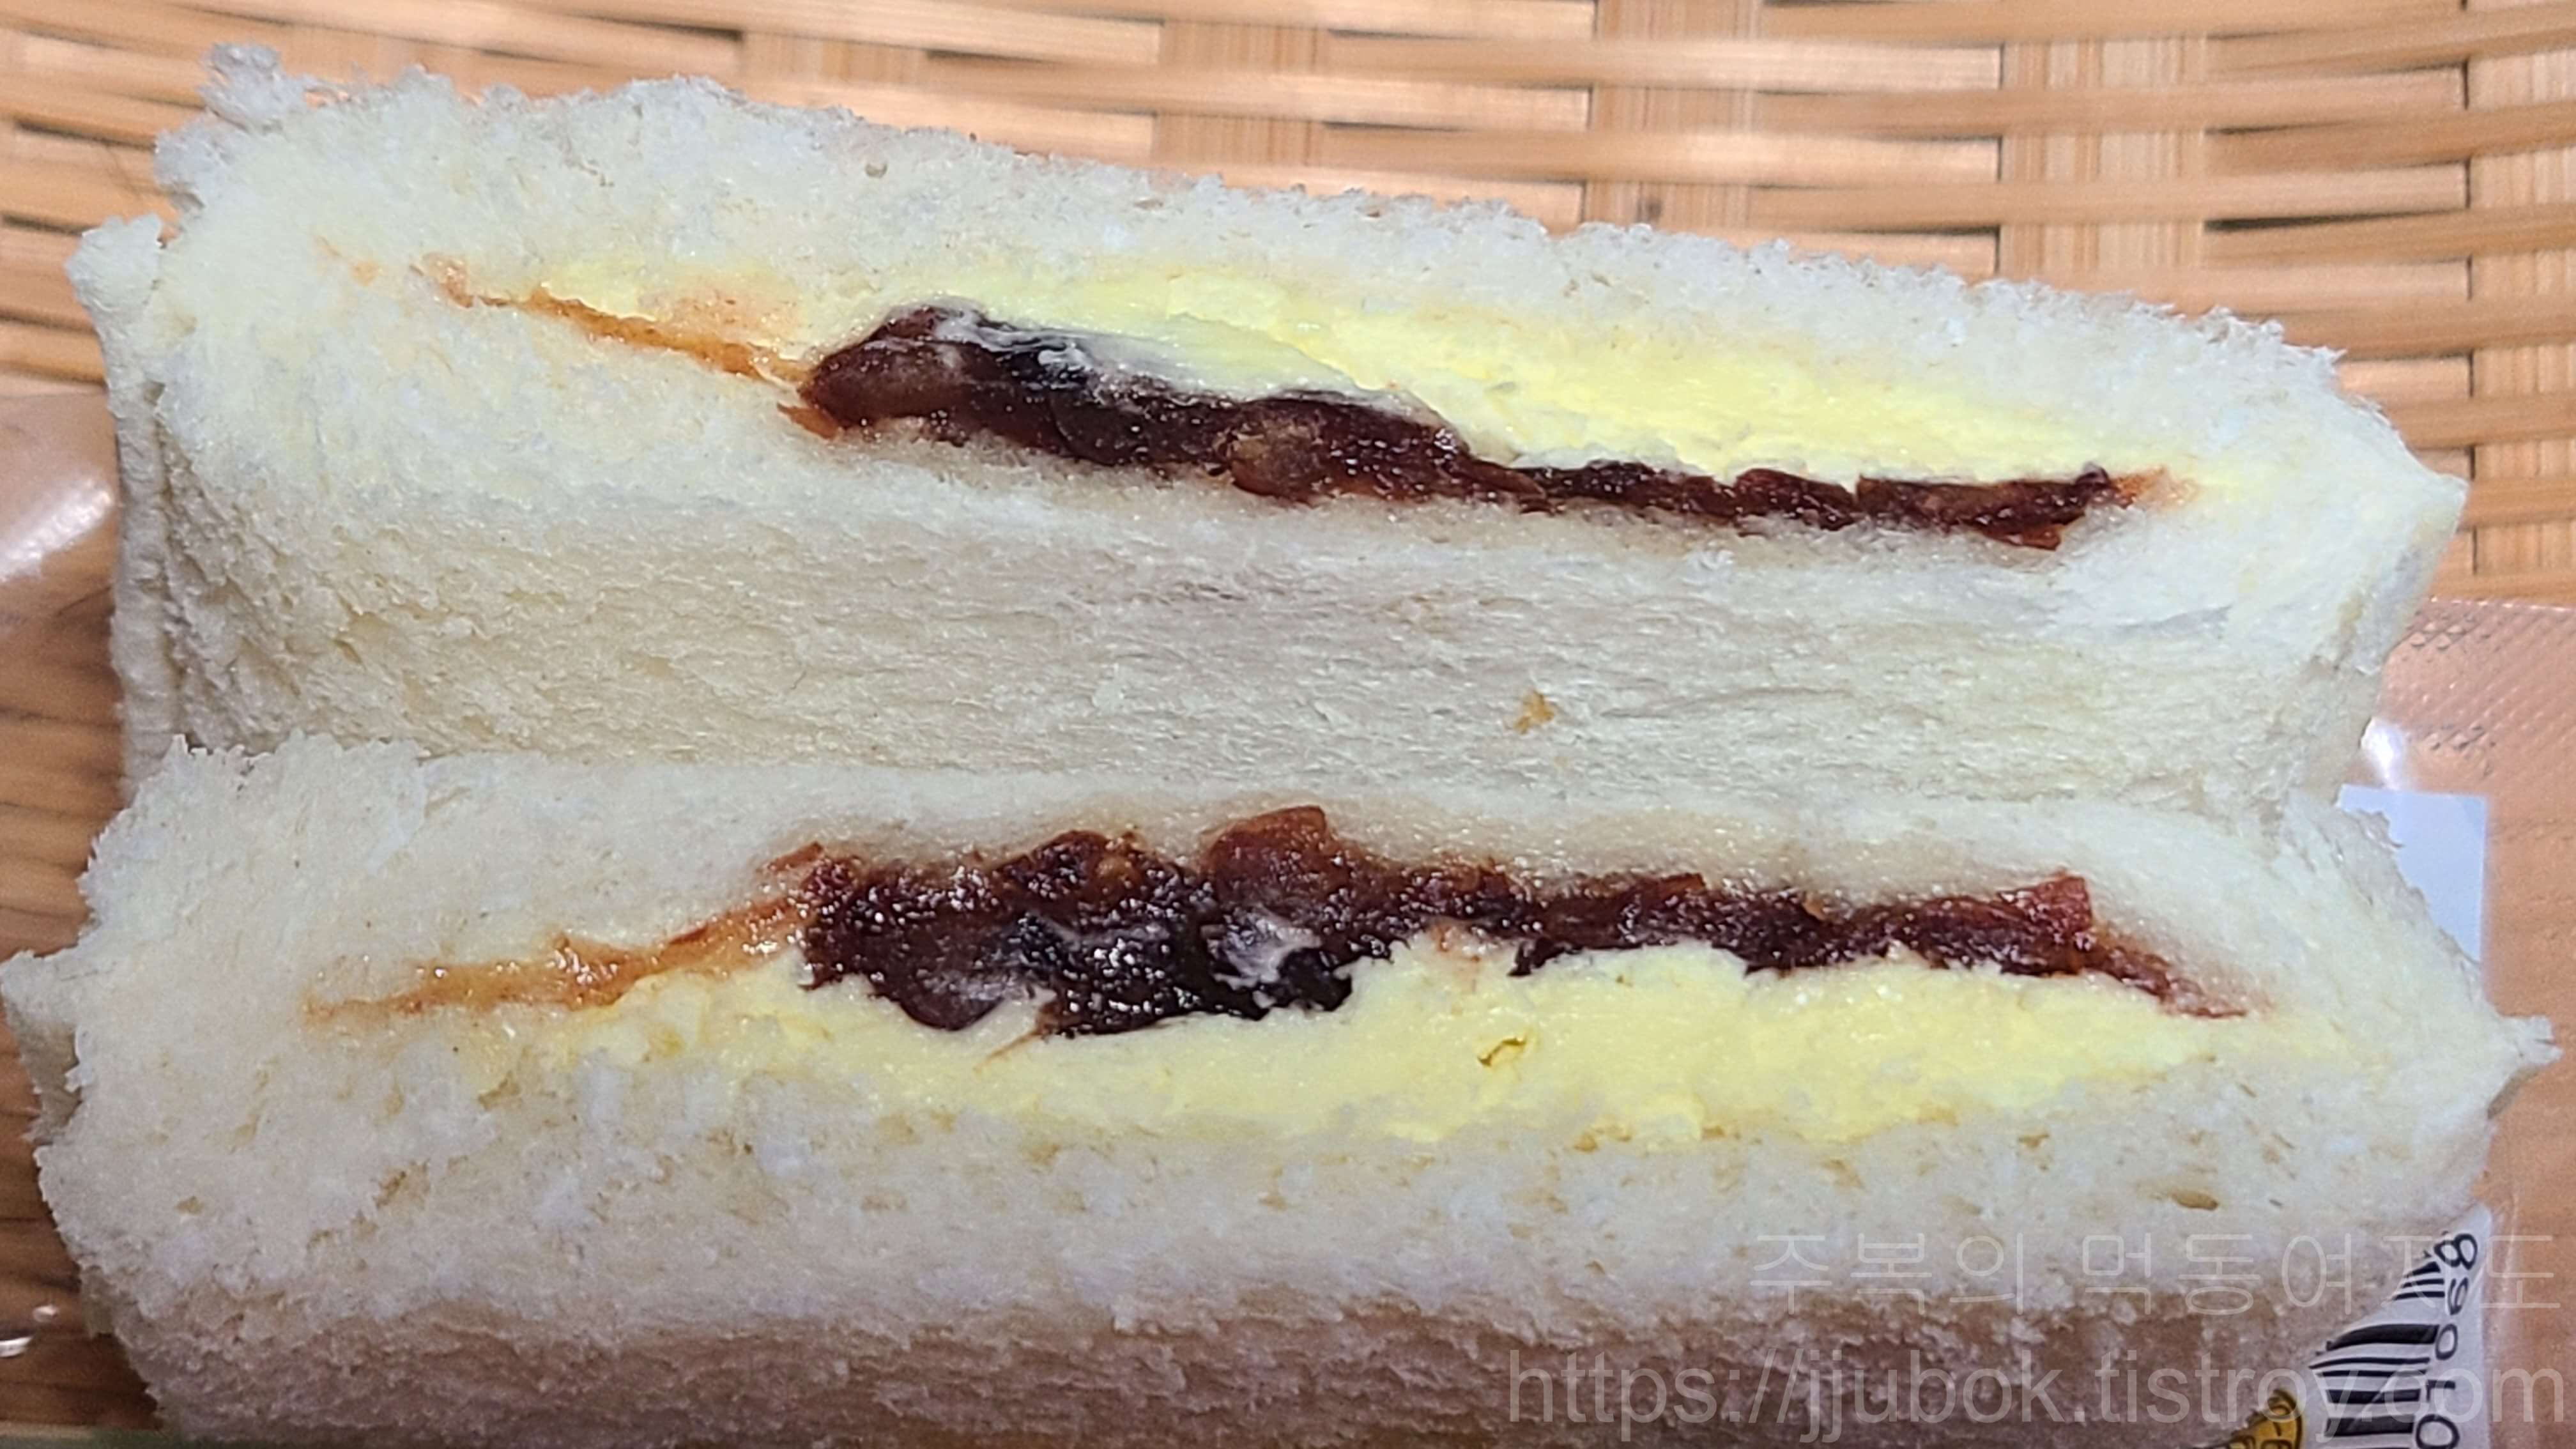 삼립-포켓몬빵-피카피카-달콤-앙버터샌드-맛